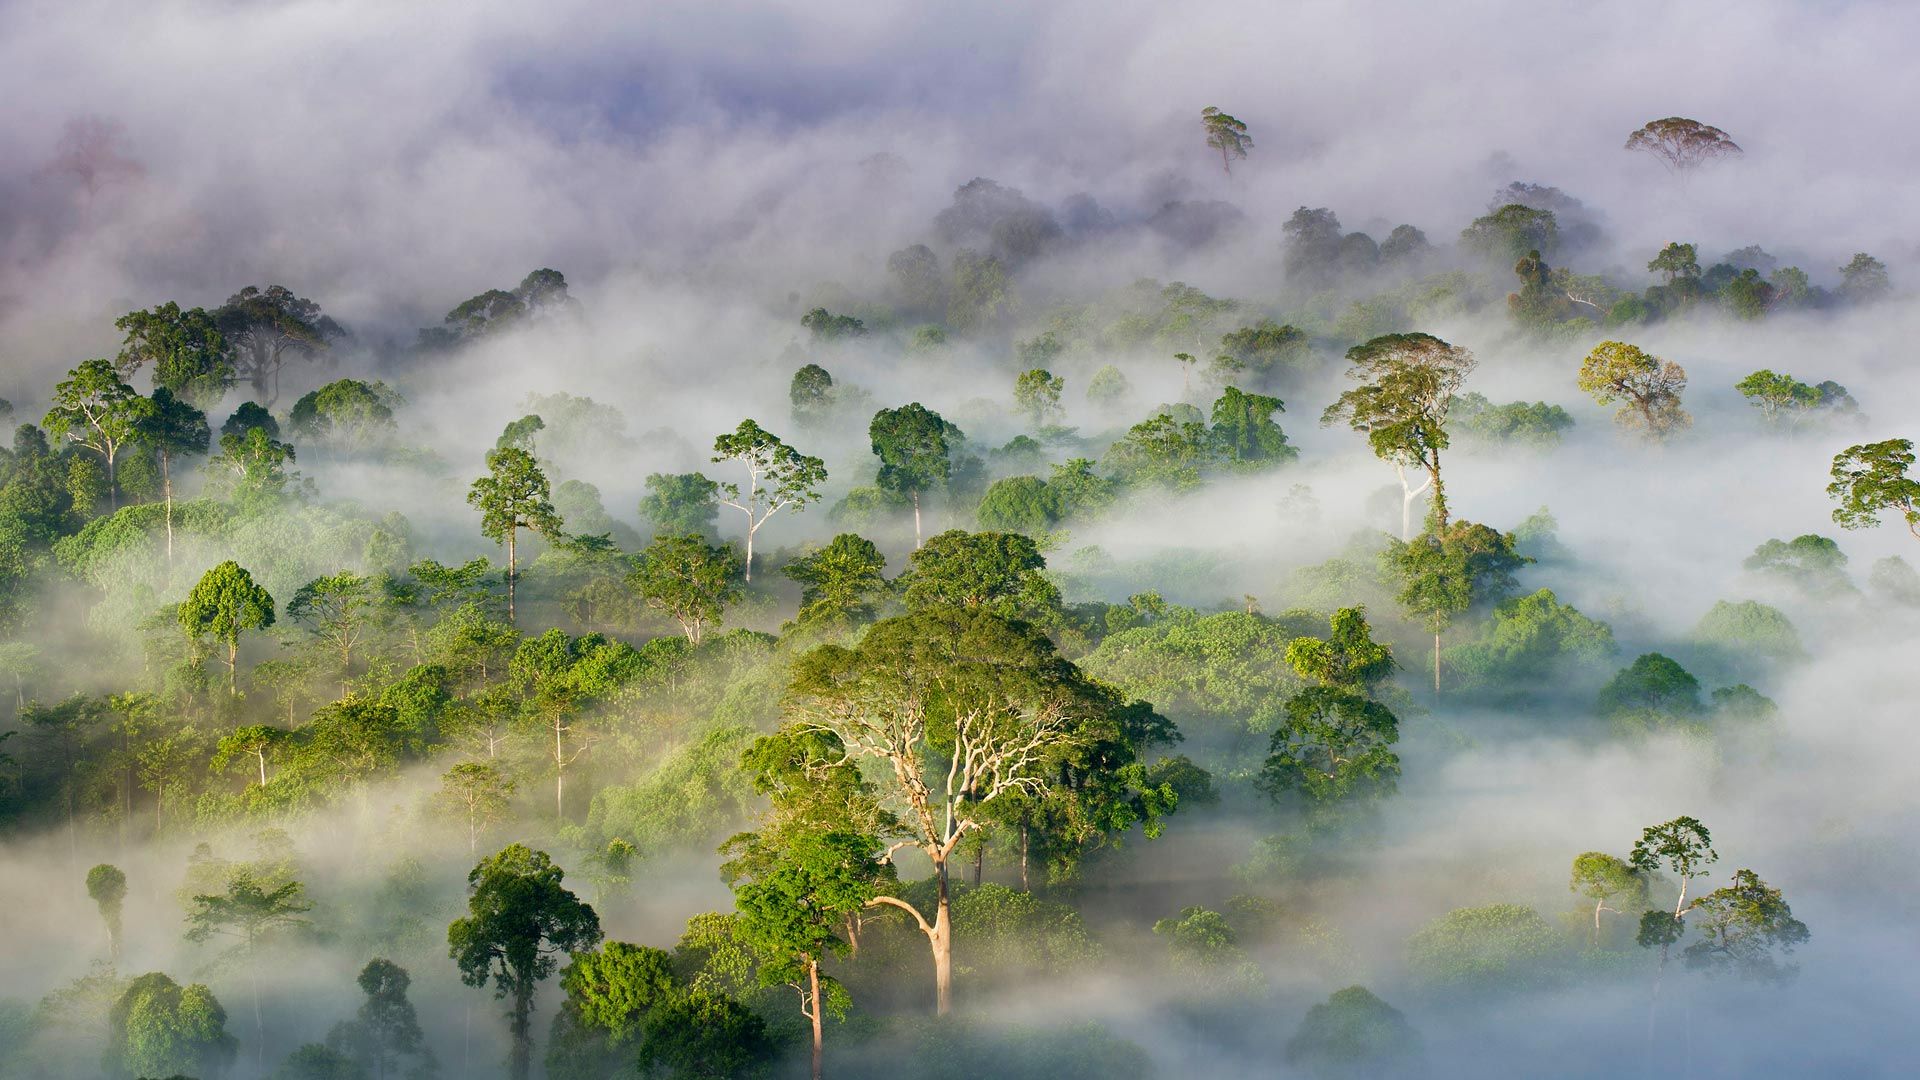 عکس جنگل مه آلود بارانی و گرمسیری با کیفیت 4k